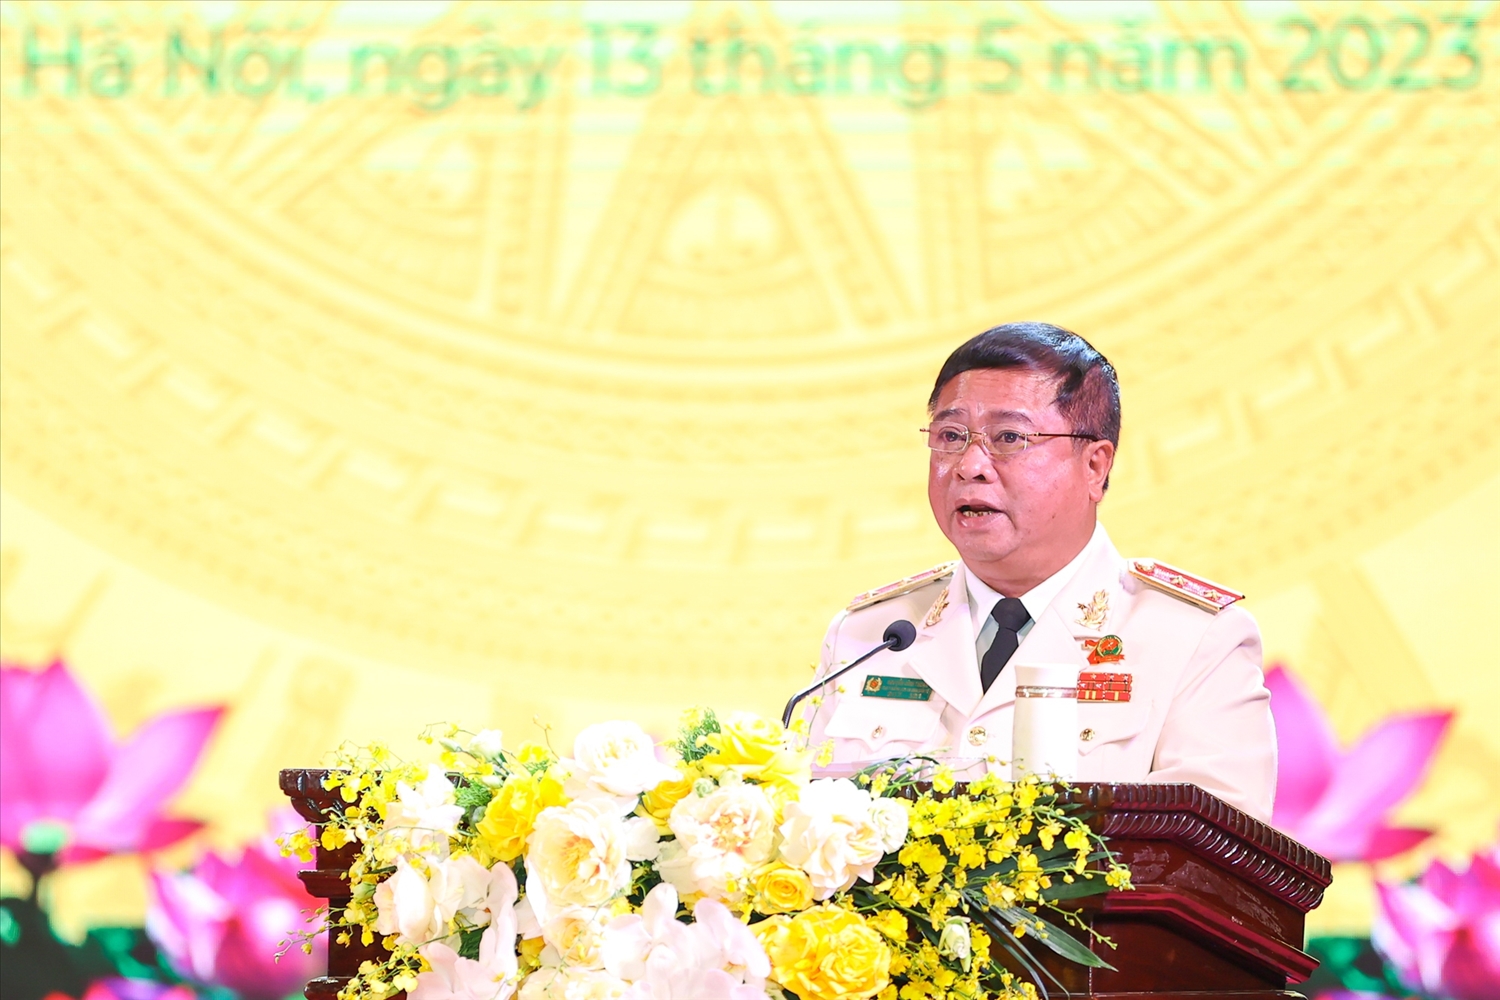 Trung tướng Nguyễn Đình Thuận, Cục trưởng Cục An ninh kinh tế, Bộ Công an đọc diễn văn kỷ niệm - Ảnh: VGP/Nhật Bắc